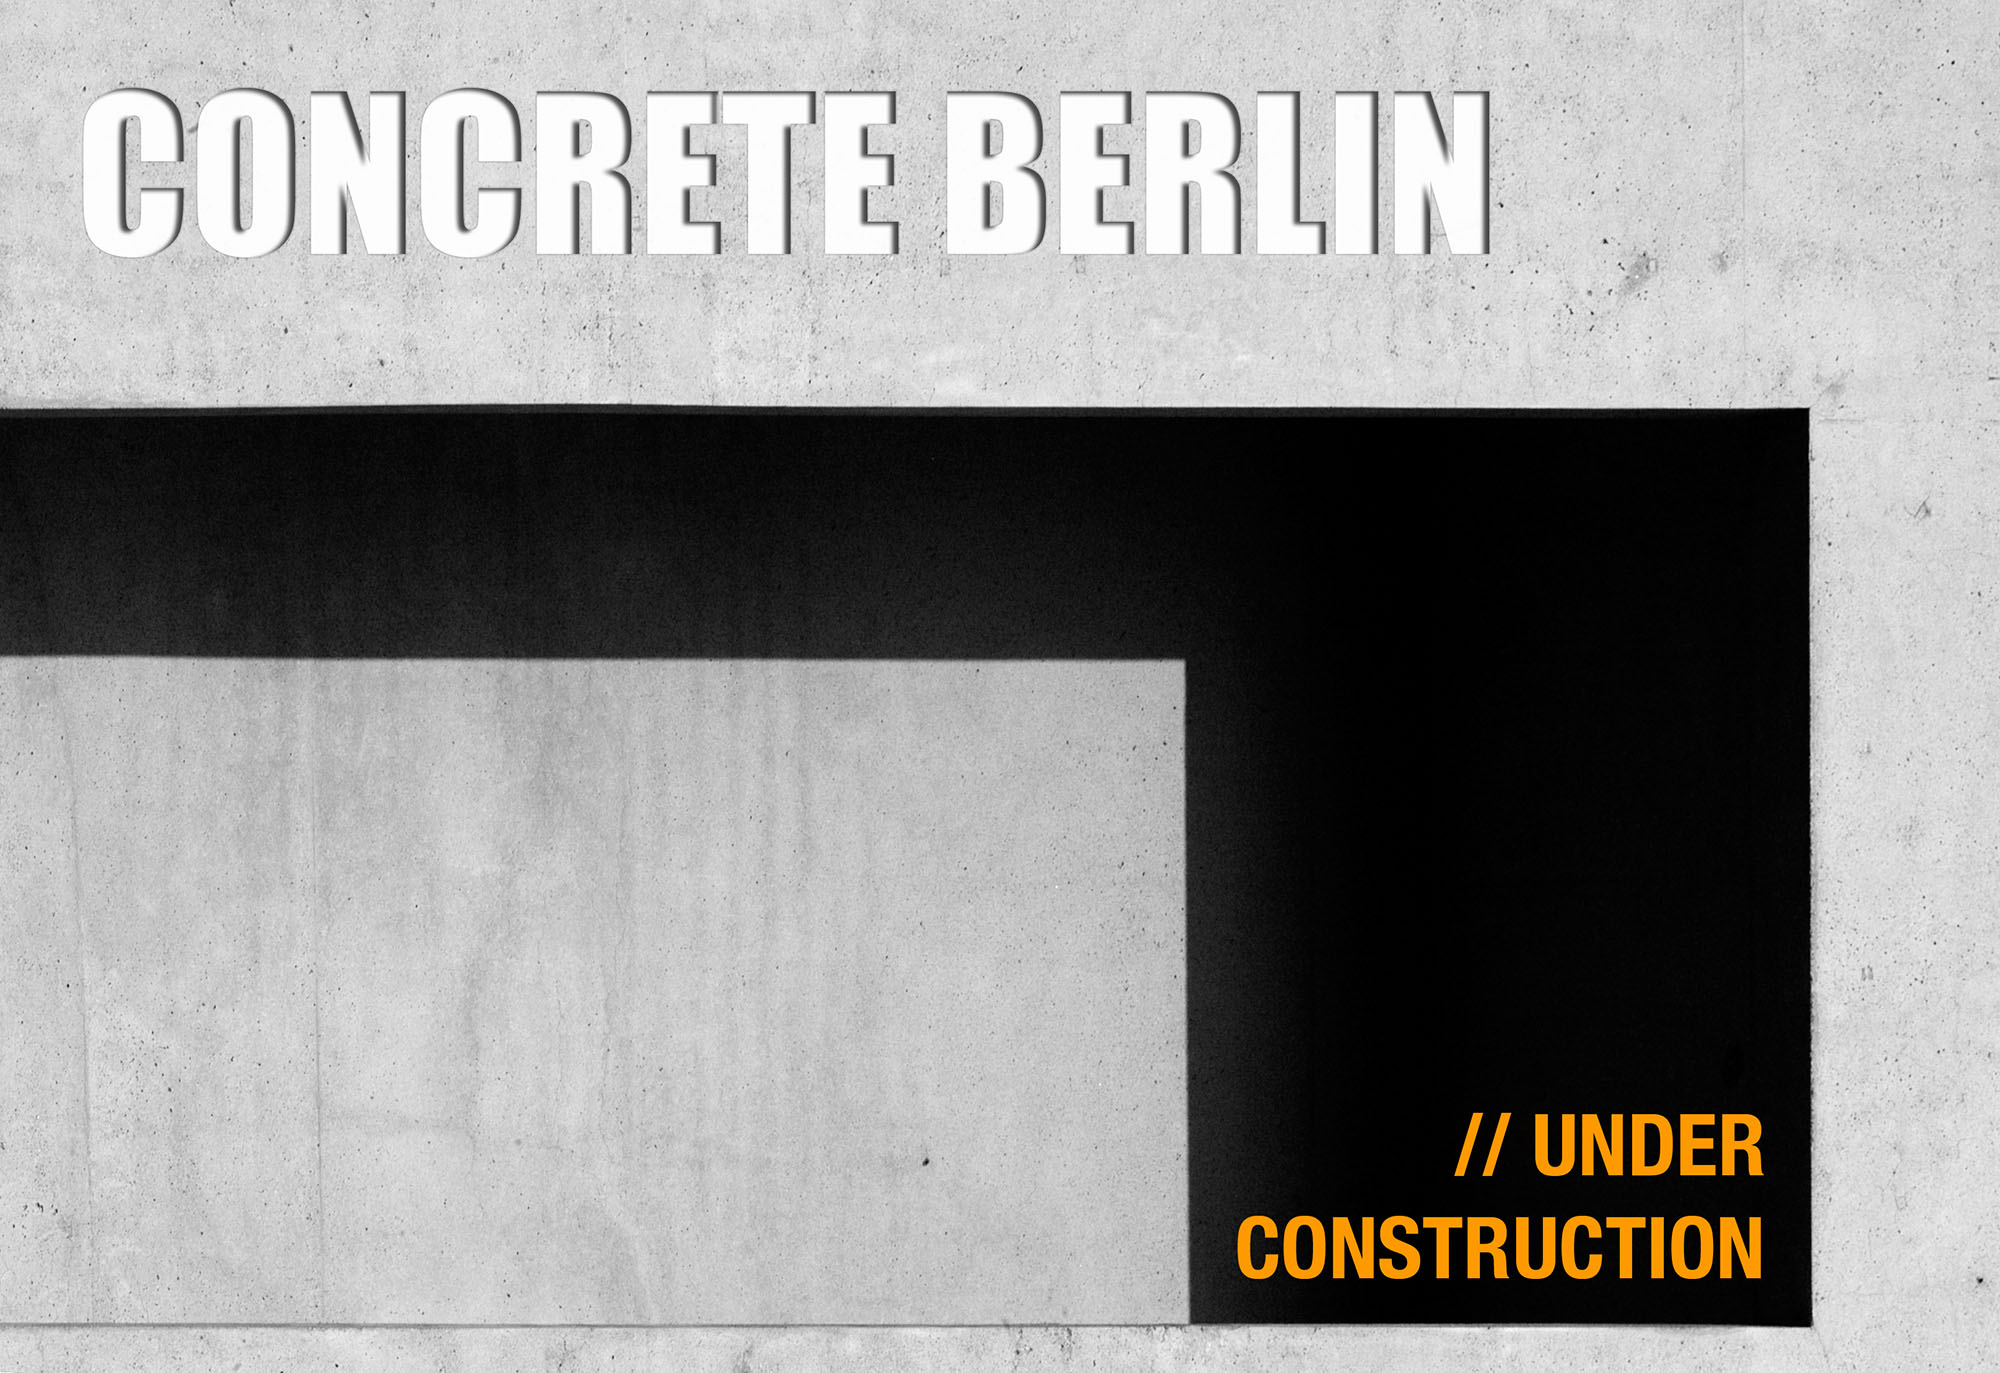 Concrete Berlin - site under construction